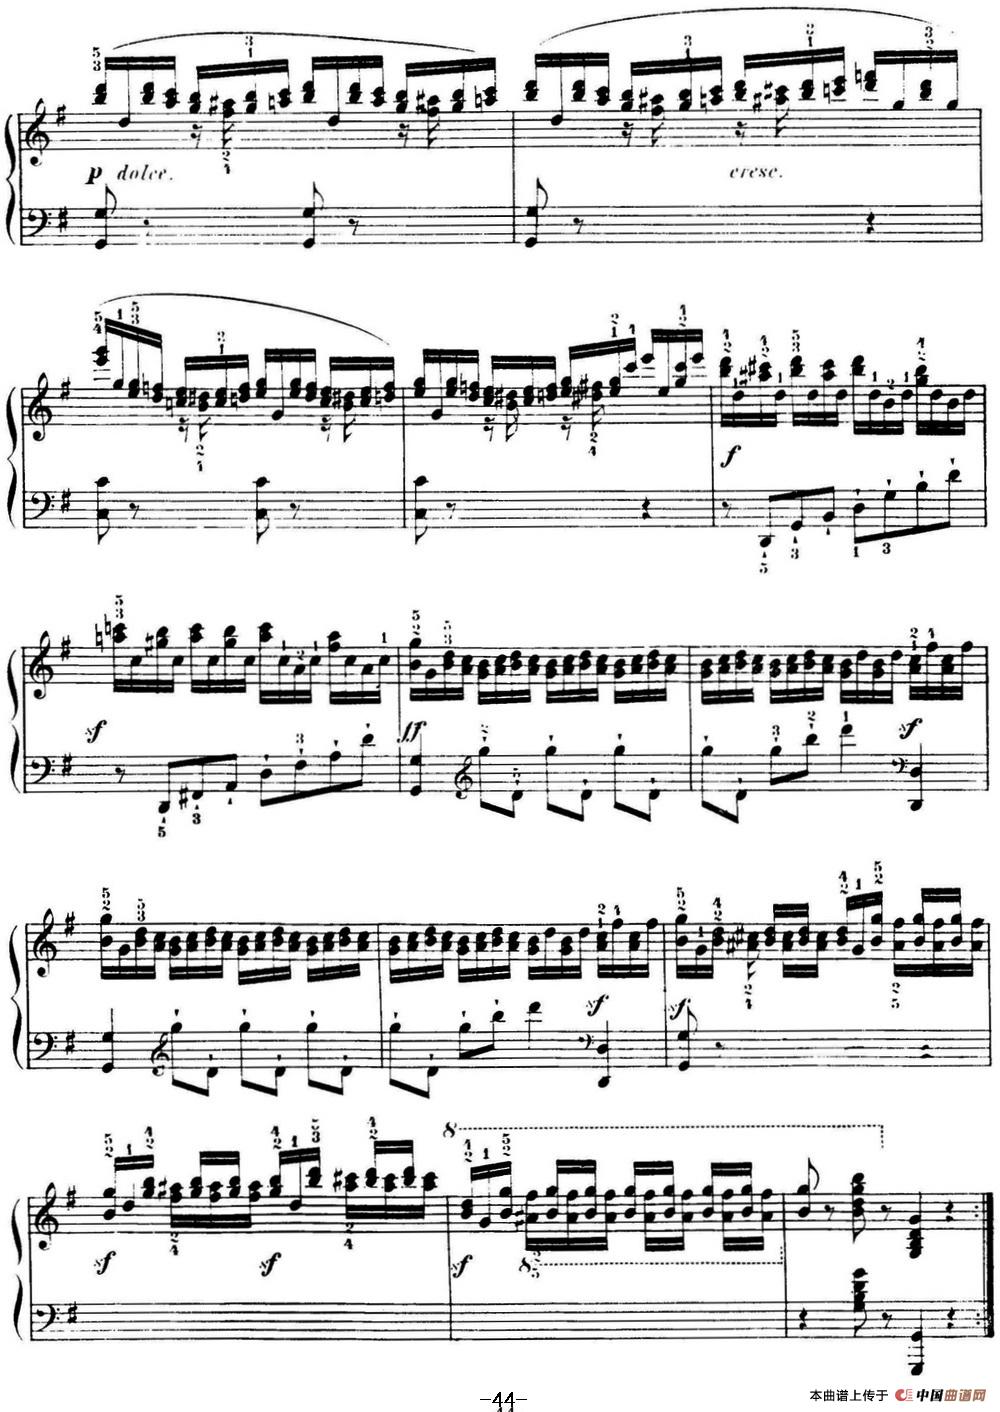 40首车尔尼Op.299钢琴快速练习曲（NO.38）(1)_-C299_页面_092.jpg